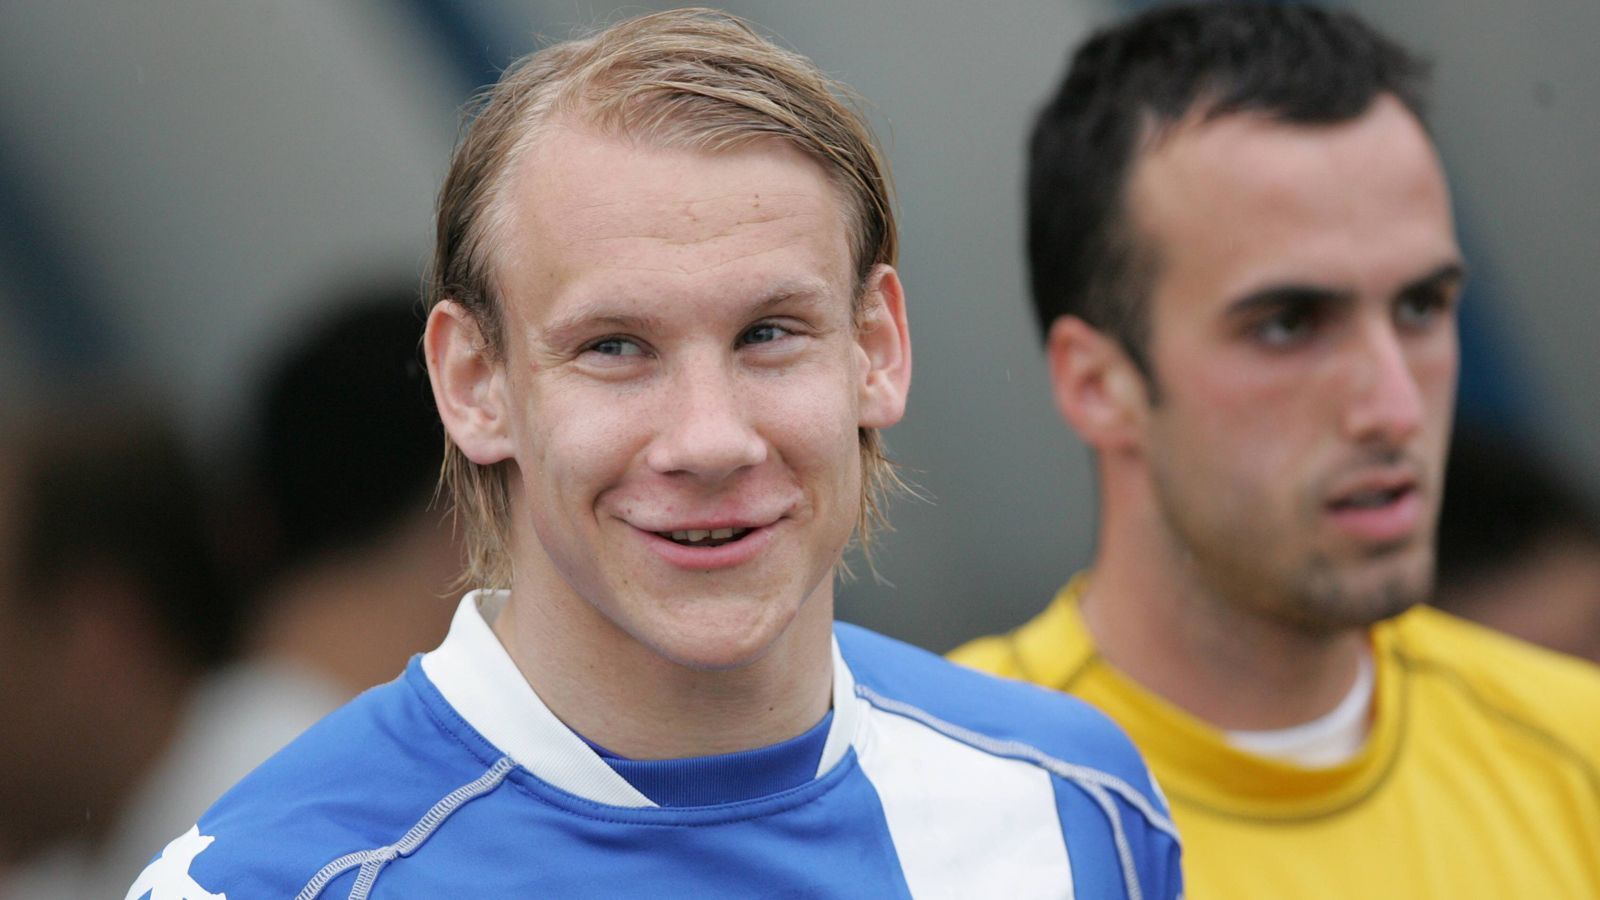 
                <strong>Domagoj Vida - 2009</strong><br>
                Da lächelt aber jemand. Warum auch nicht, Vida spielte 2009 für den Weltklub NK Osijek. Hat der Kroate auch am Sonntag nach dem Finale Grund zur Freude?
              